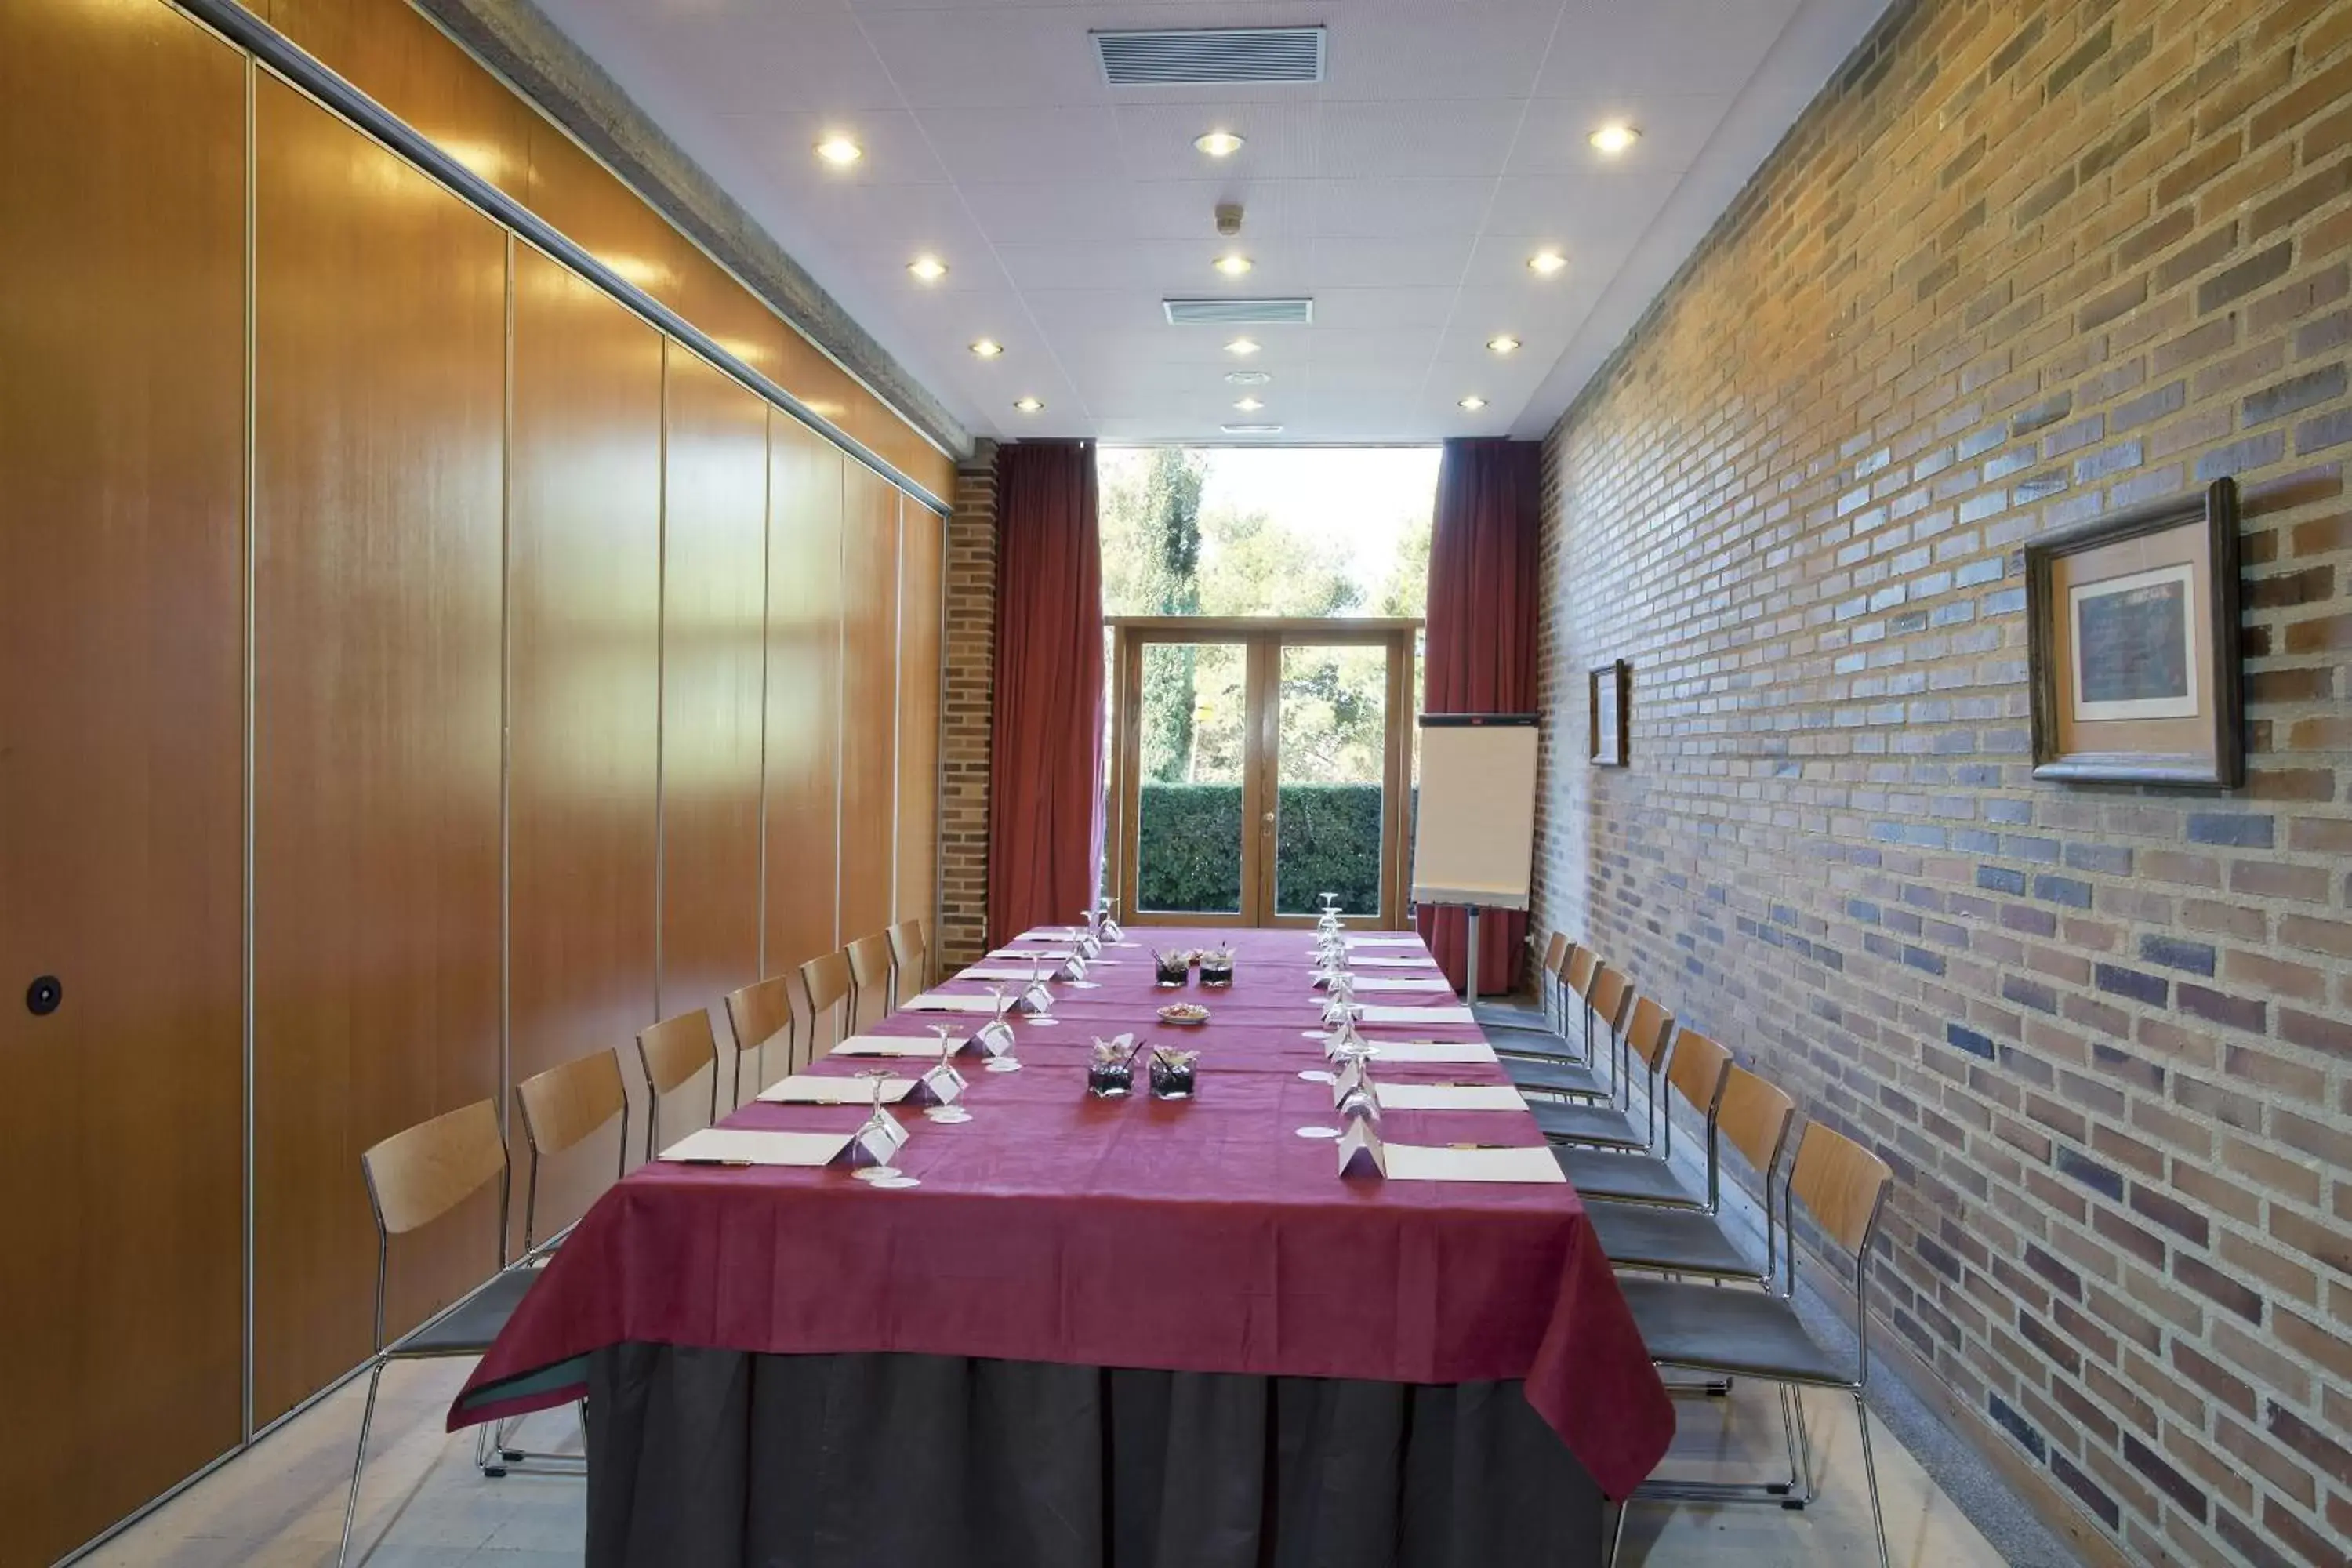 Meeting/conference room in Parador de Segovia